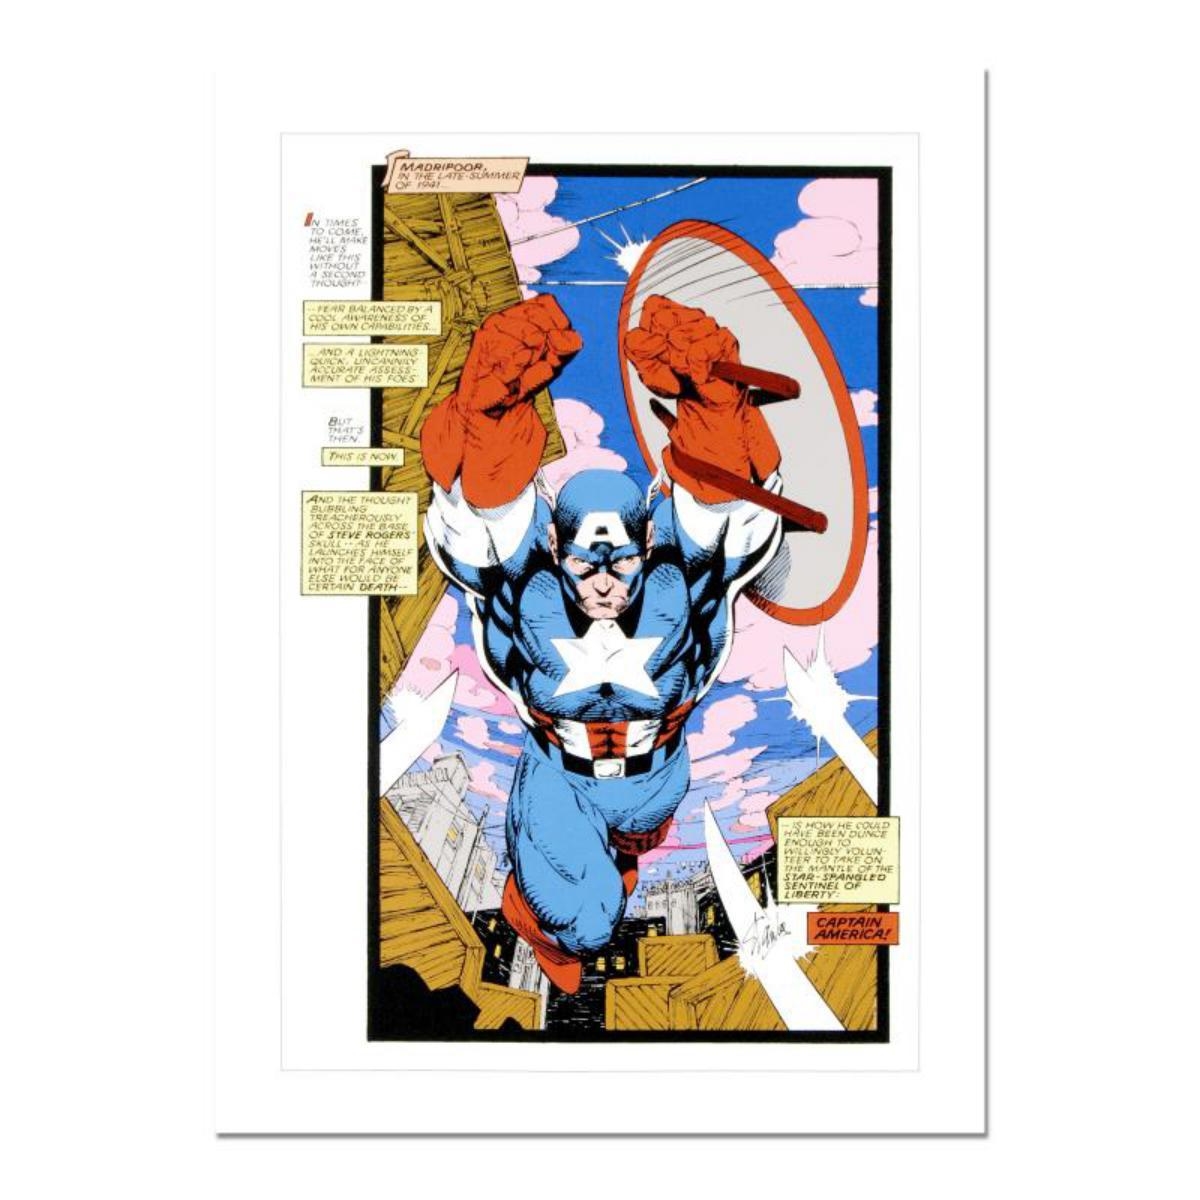 Captain America, Sentinel: Uncanny X-Men #268 by Jim Lee